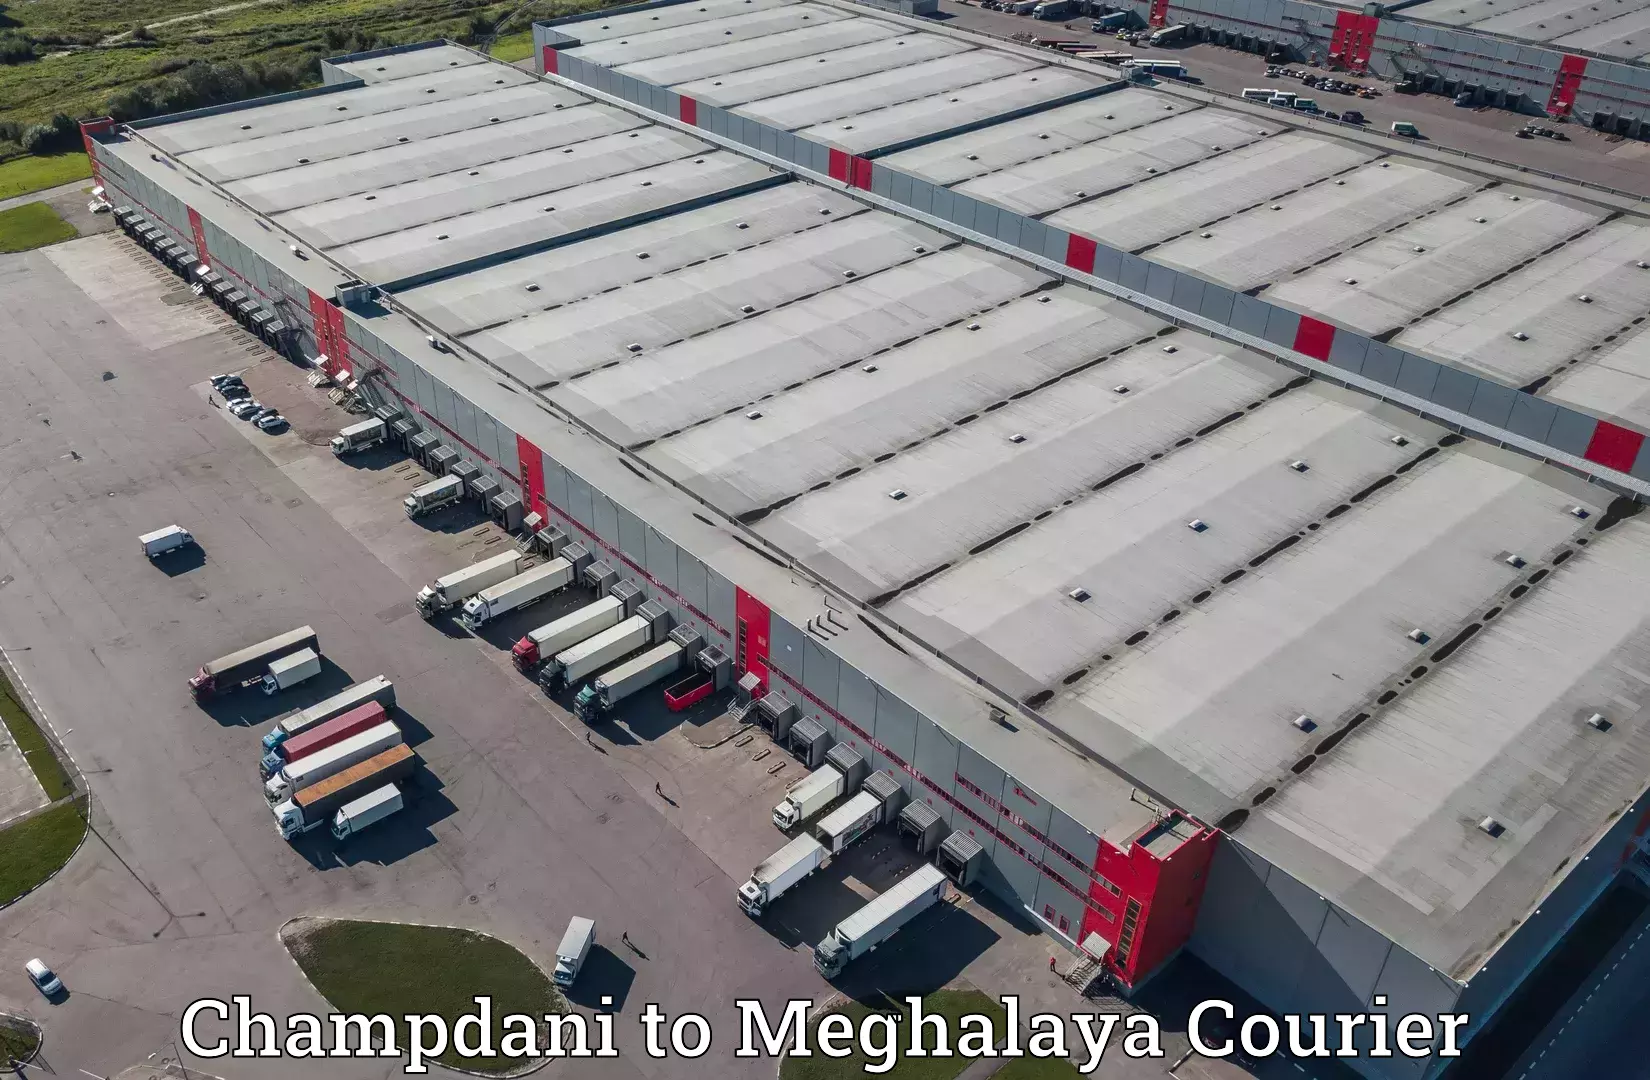 Door-to-door freight service Champdani to Dkhiah West